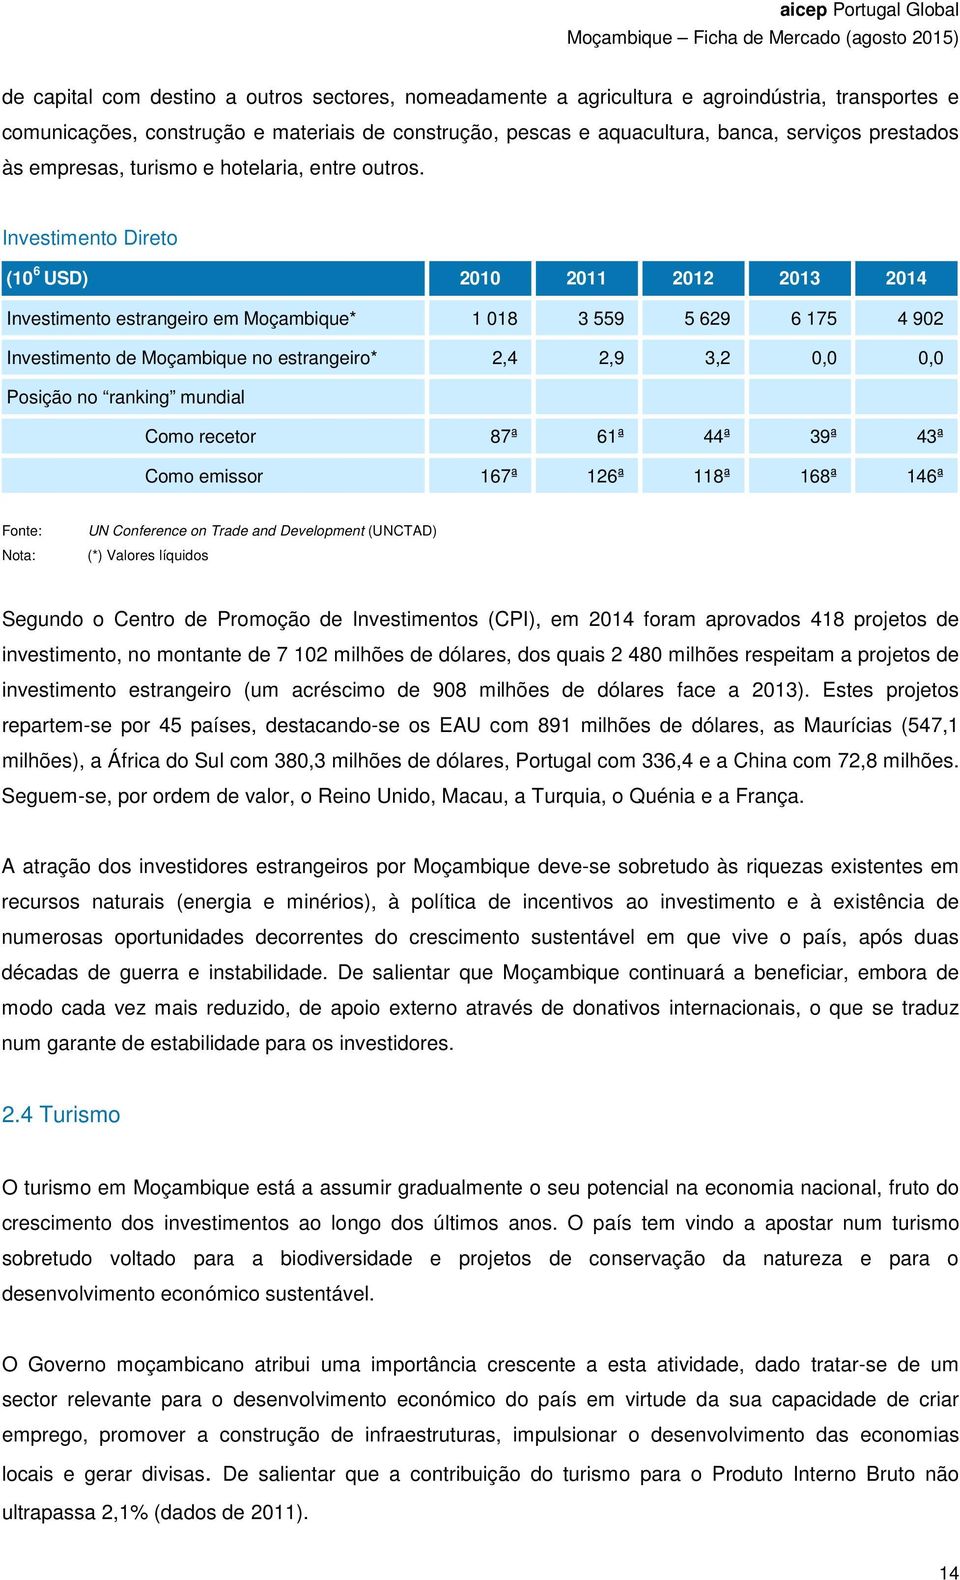 Investimento Direto (10 6 USD) 2010 2011 2012 2013 2014 Investimento estrangeiro em Moçambique* 1 018 3 559 5 629 6 175 4 902 Investimento de Moçambique no estrangeiro* 2,4 2,9 3,2 0,0 0,0 Posição no